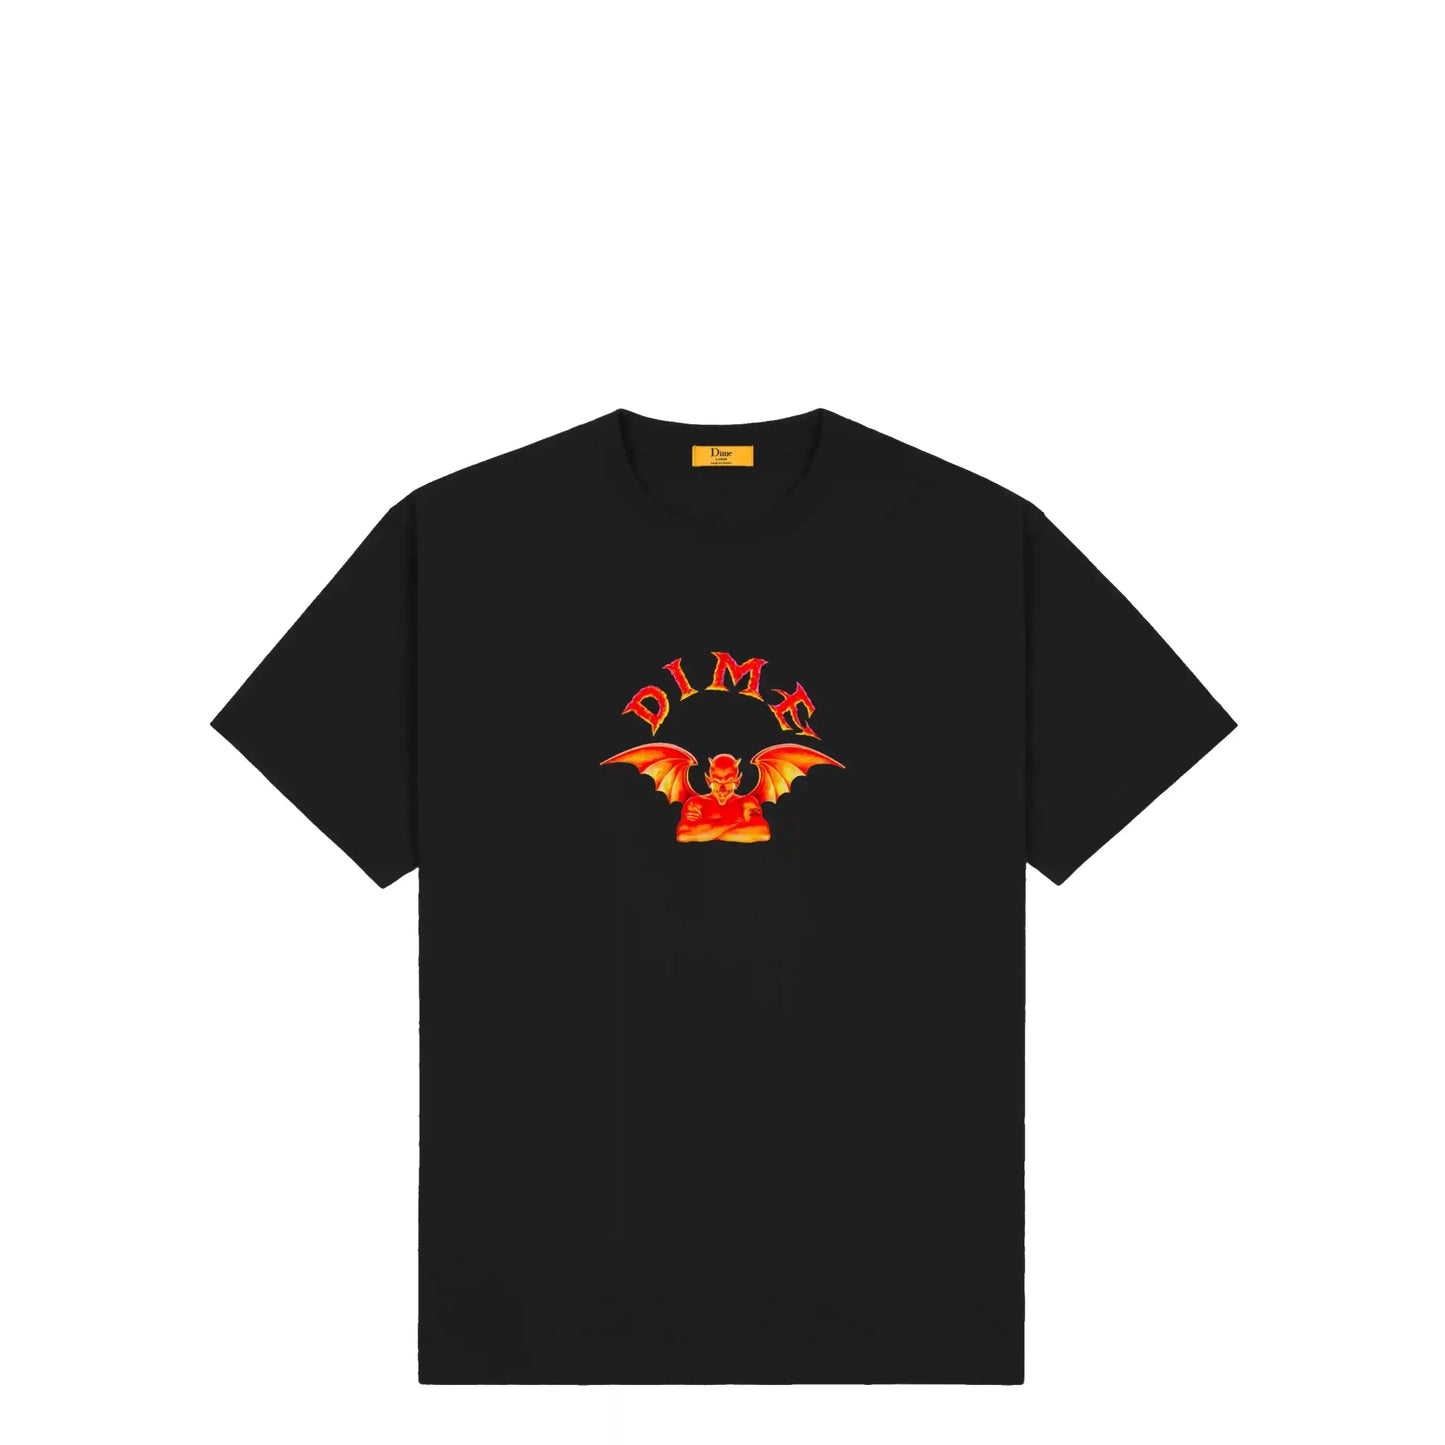 Dime Devil T-Shirt, black - Tiki Room Skateboards - 1